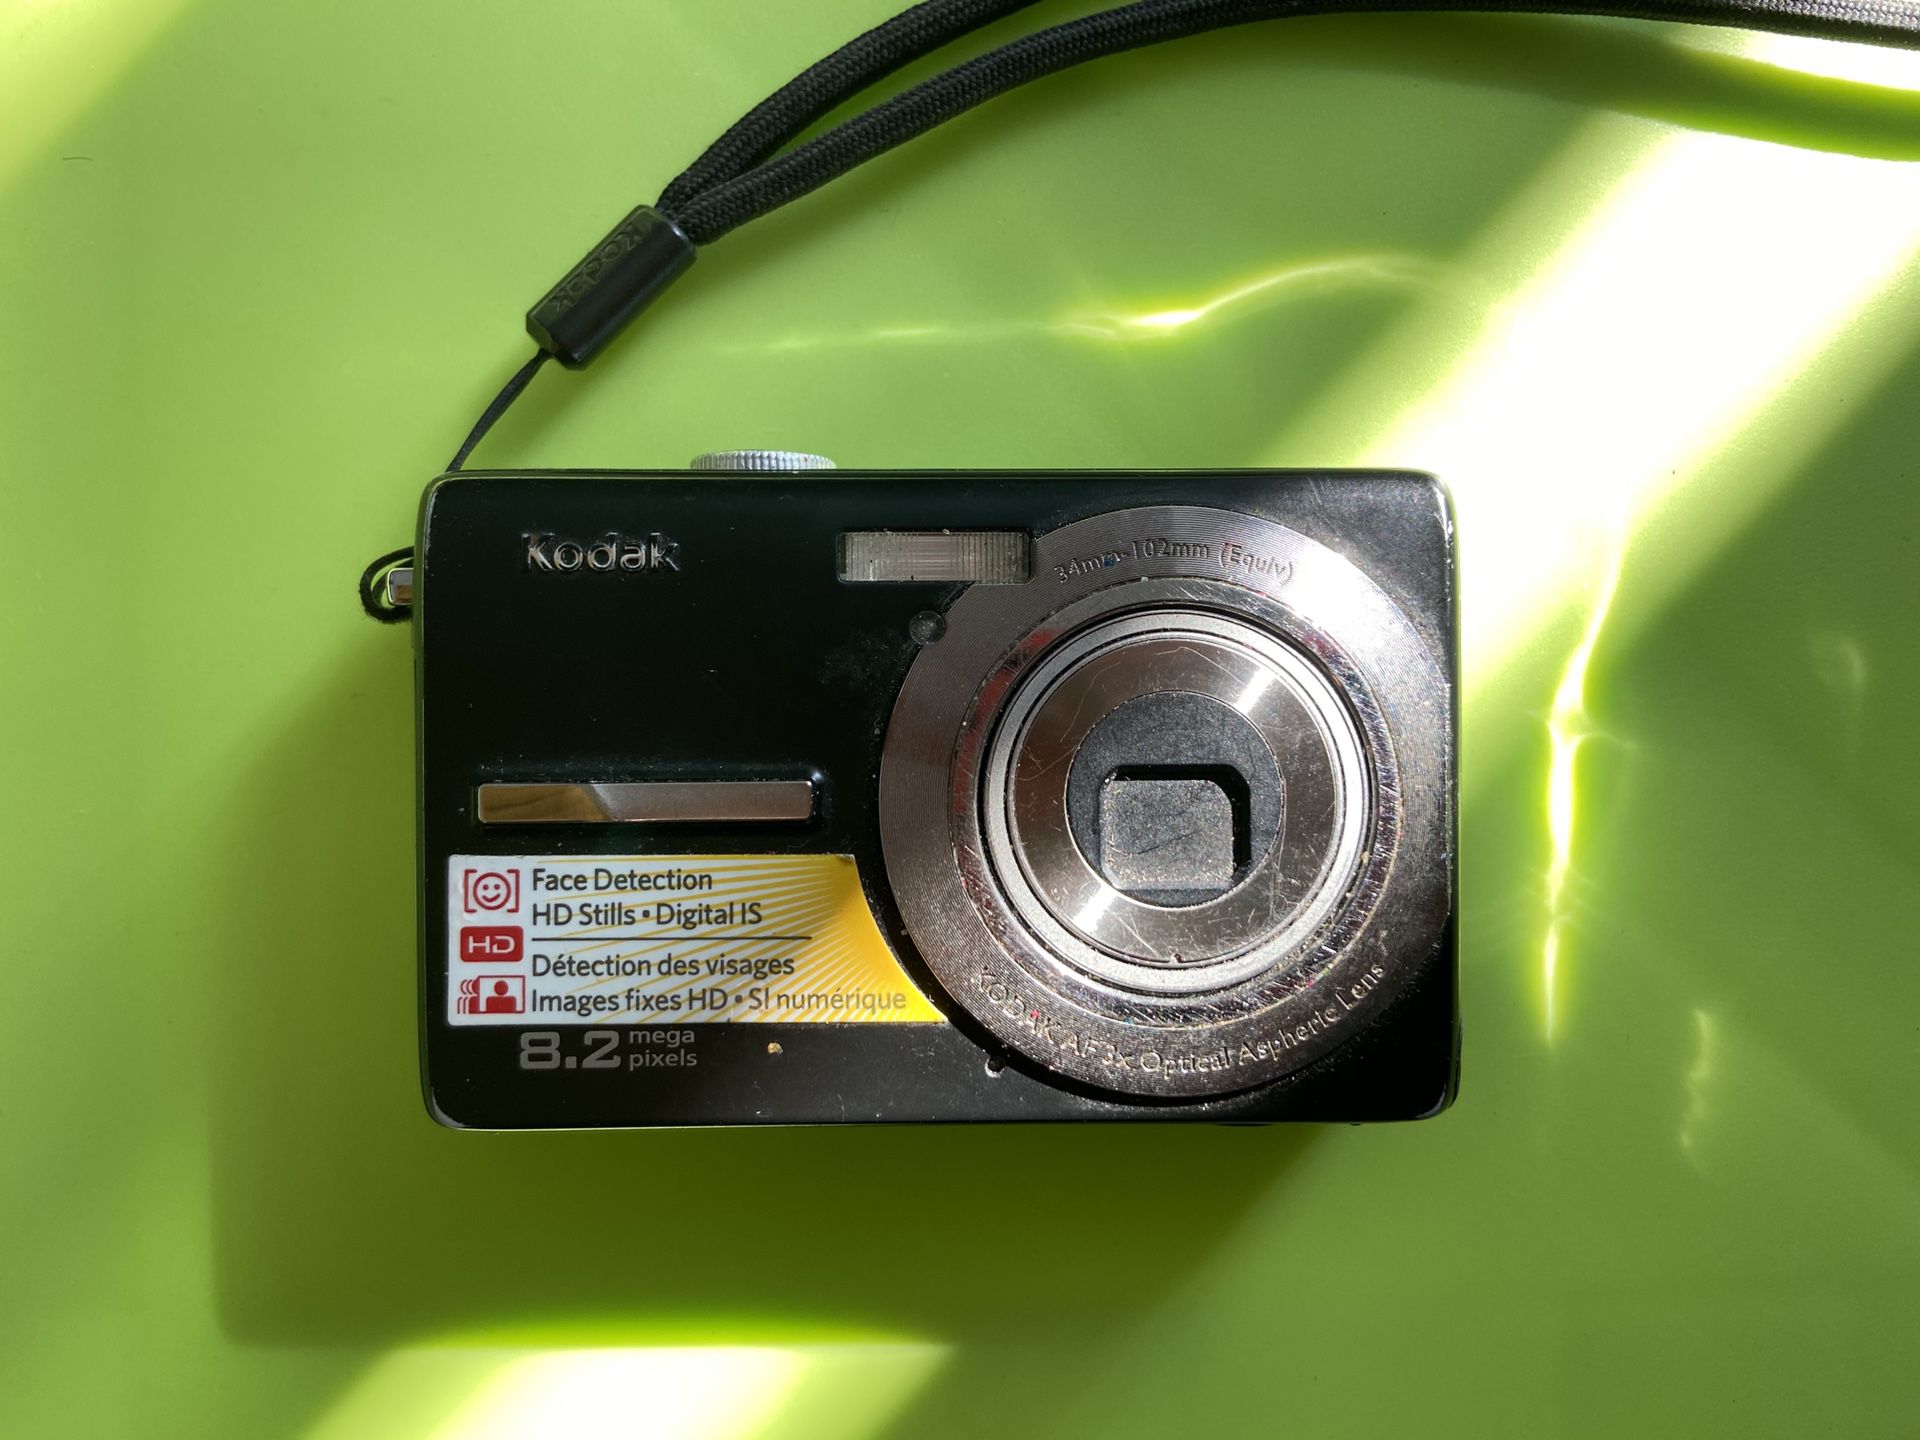 Kodak 8.2 mega pixel digital camera